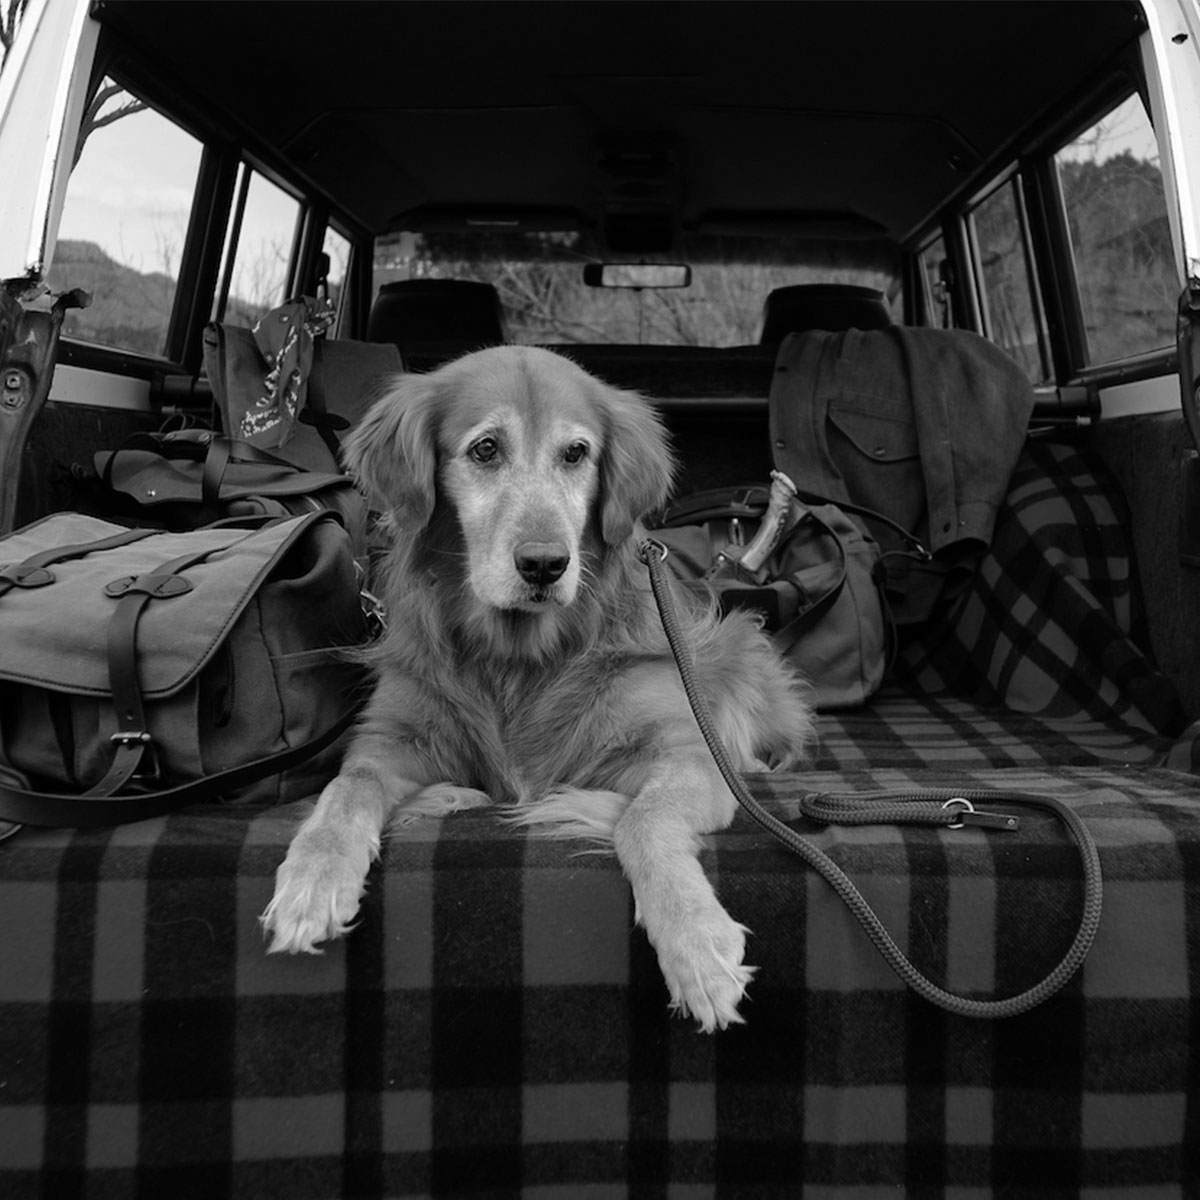 https://www.beaubags.com/media/wysiwyg/filson-accessoires/Filson-Mackinaw-Blanket-11080110-gray-black-dog.jpg